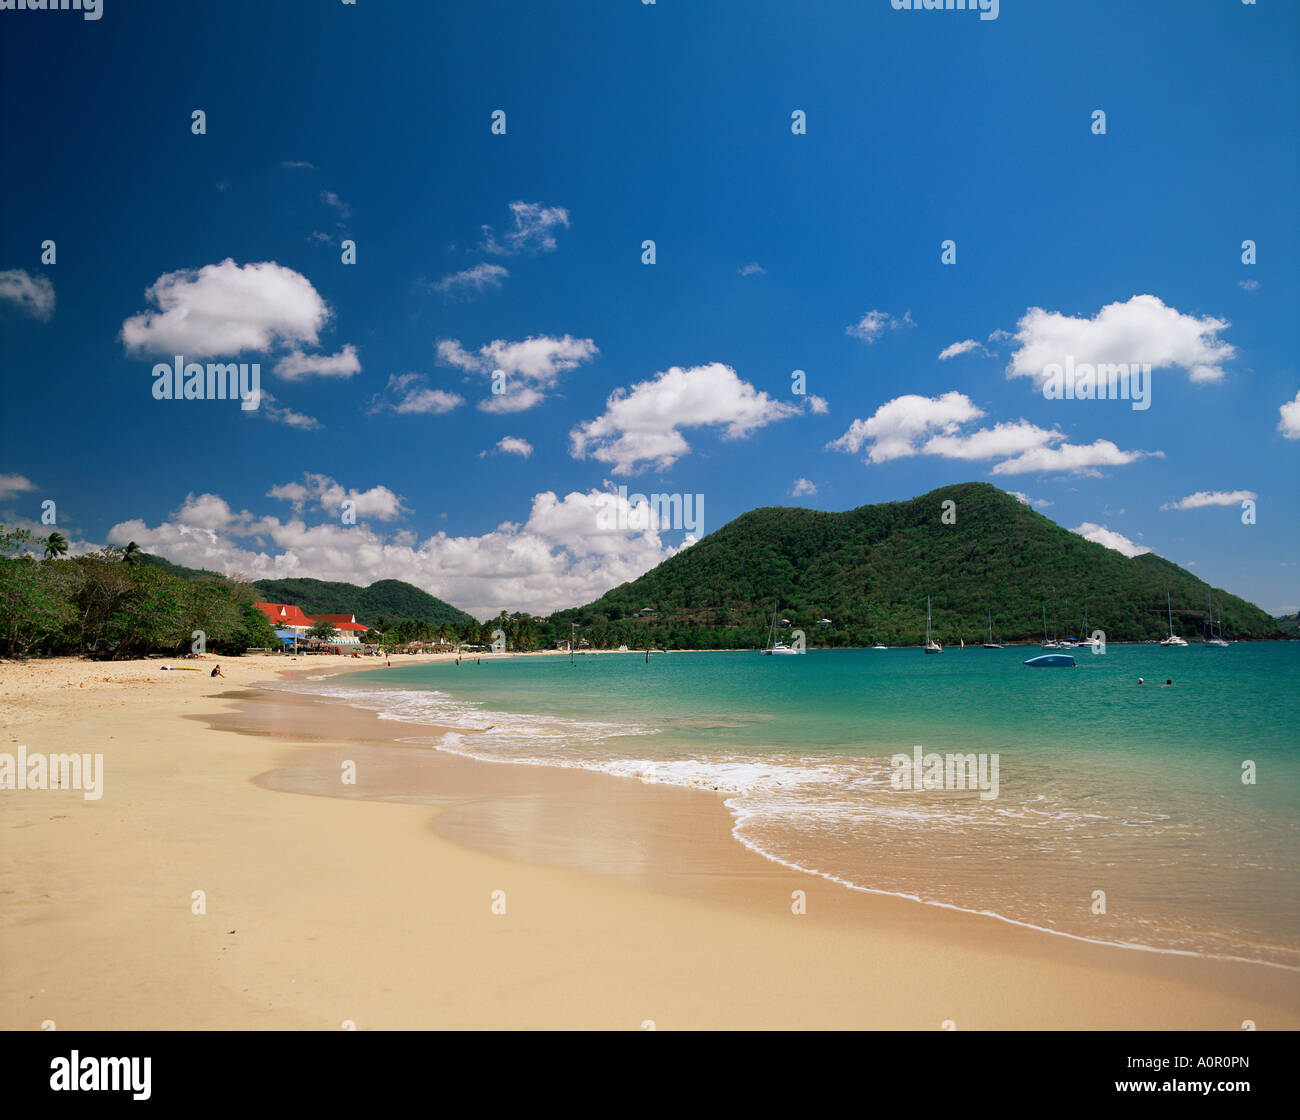 La plage de Reduit Rodney Bay St Lucia Îles du Vent Antilles Caraïbes Amérique centrale Banque D'Images